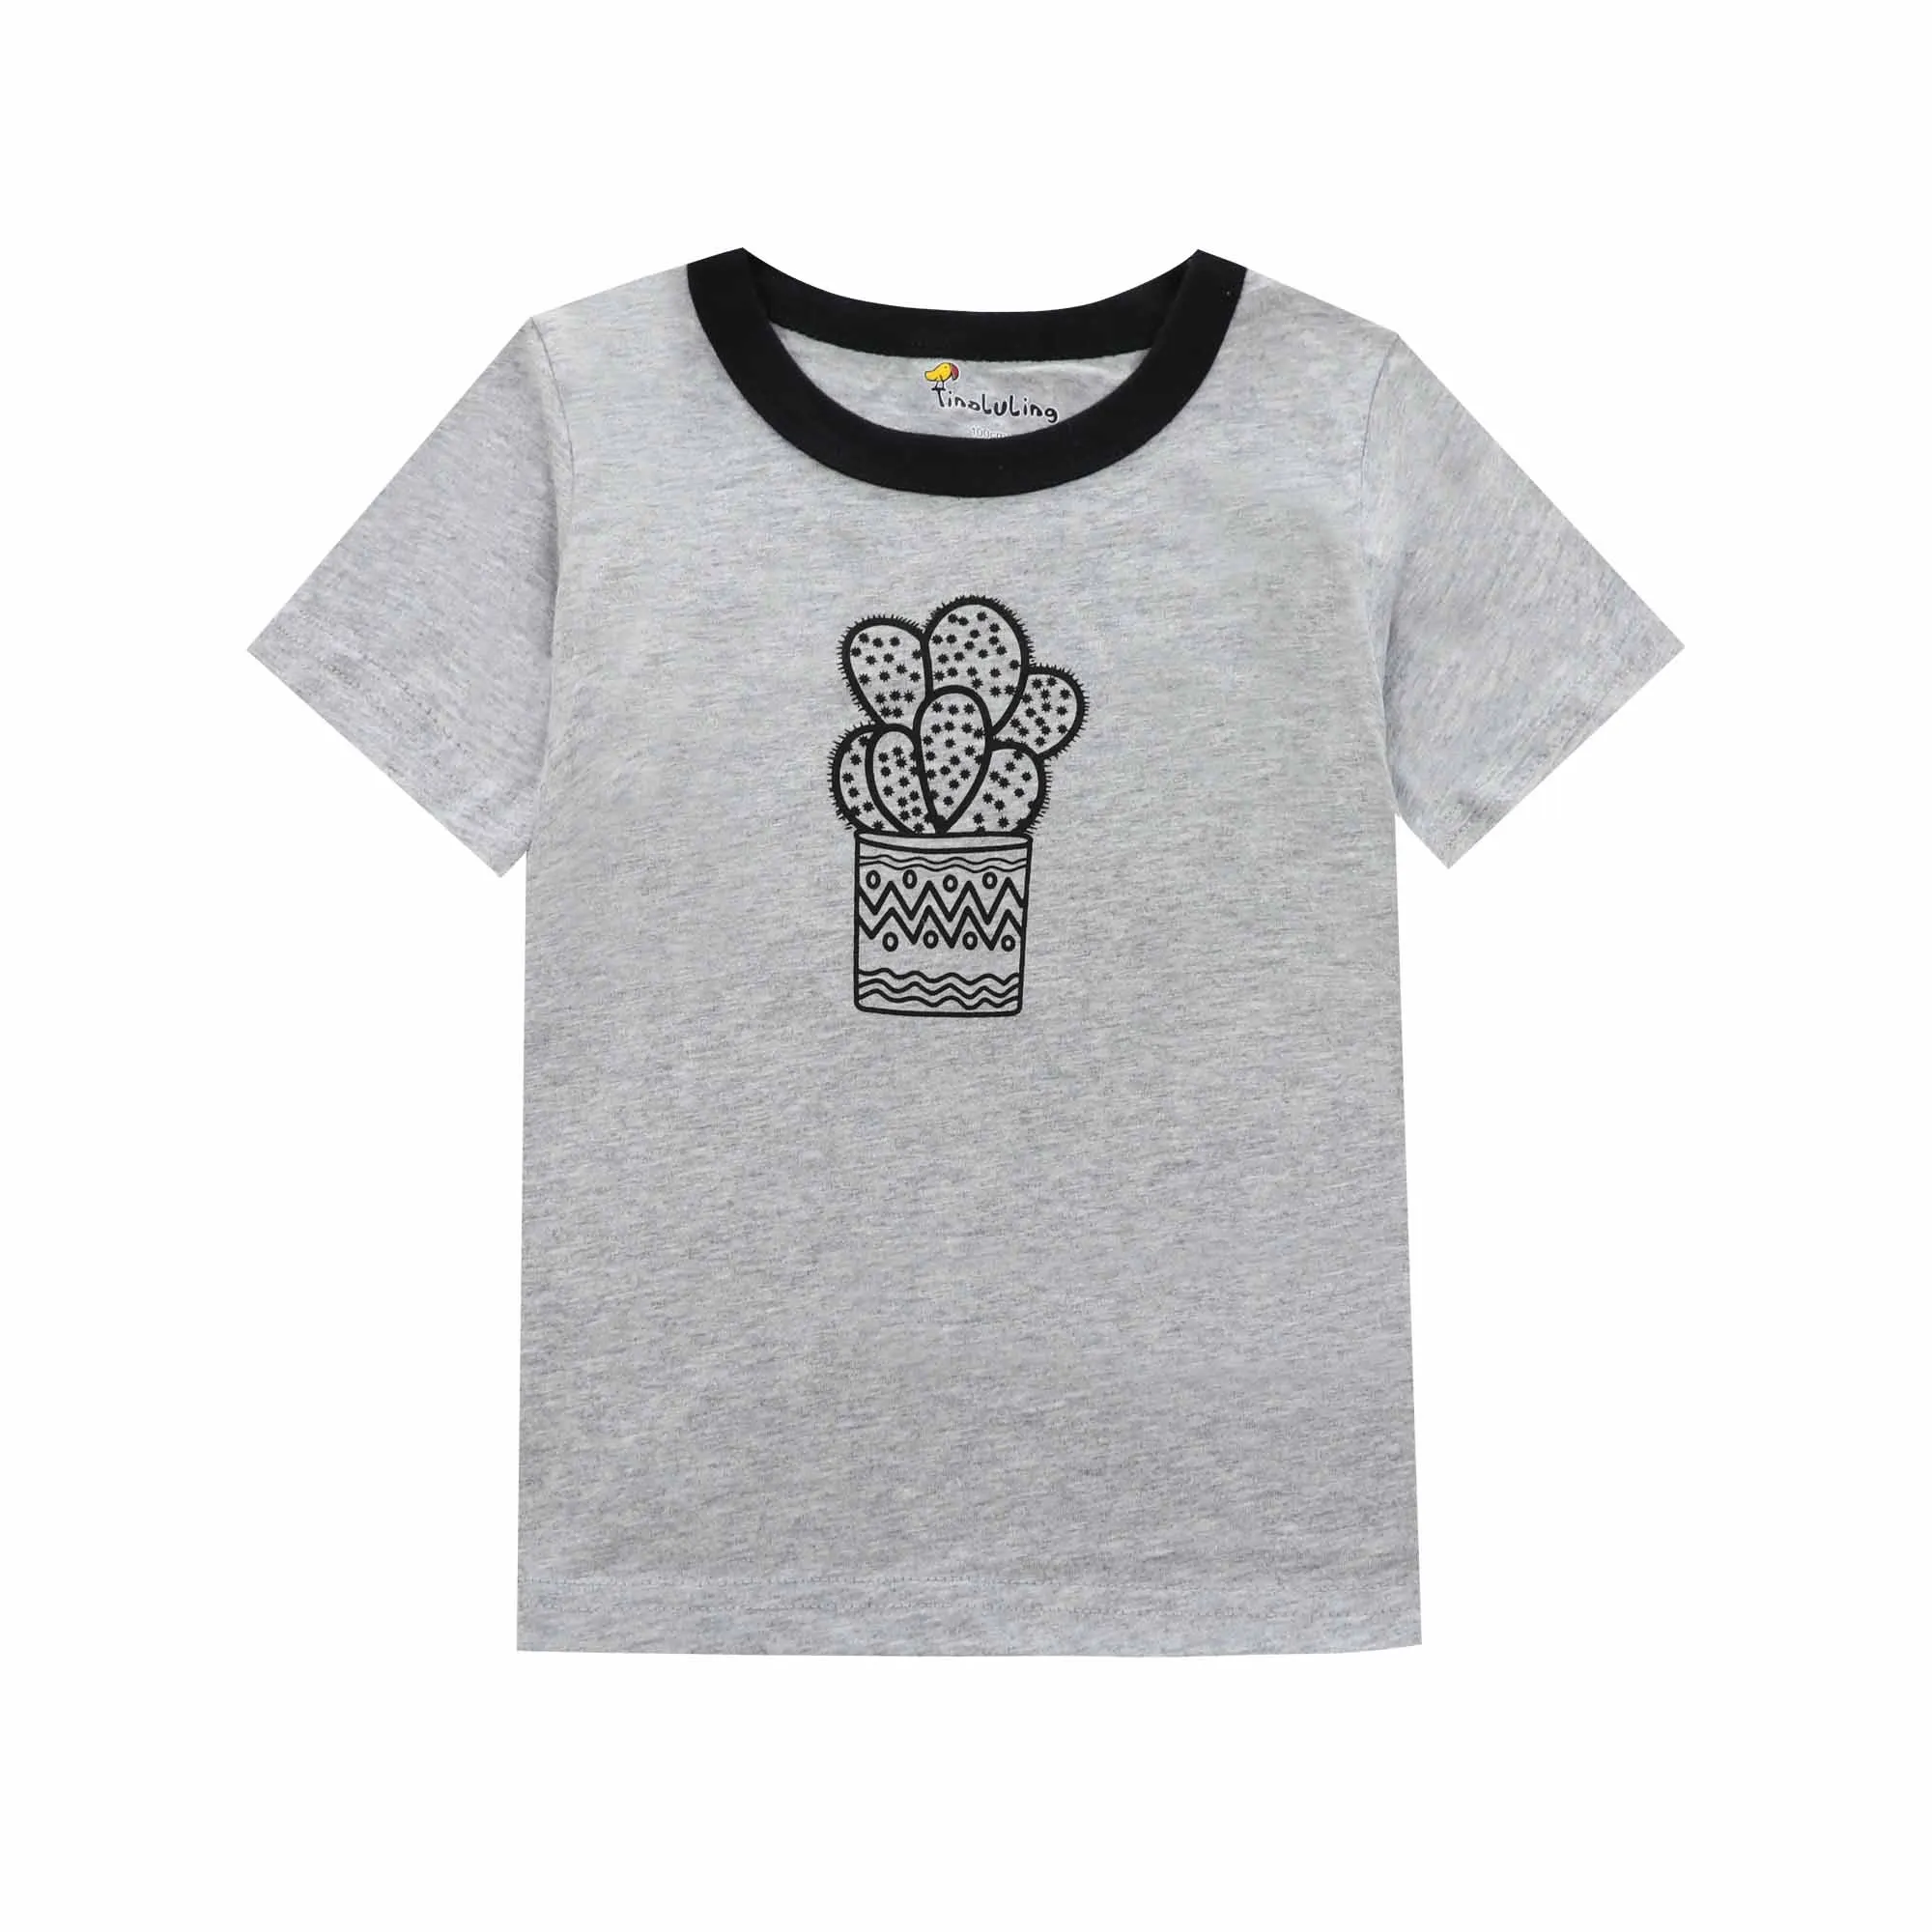 Одежда для маленьких мальчиков одежда с фламинго для маленьких девочек футболки Забавная детская футболка детские футболки для девочек и мальчиков, топы - Цвет: ST12